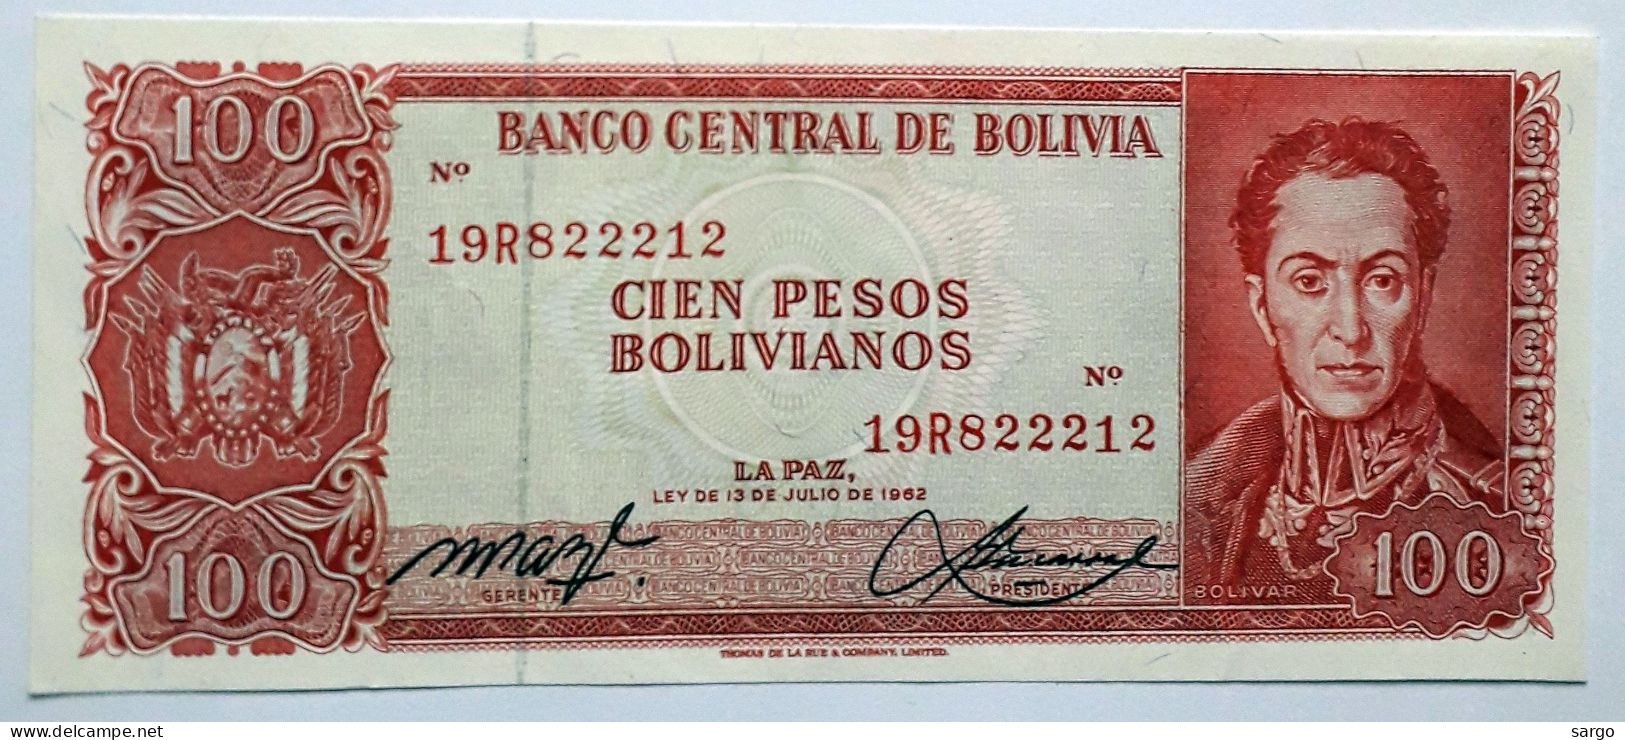 BOLIVIA - 100 PESOS BOLIVIANOS  - P 164  (1962) - UNC - BANKNOTES - PAPER MONEY - CARTAMONETA - - Bolivia